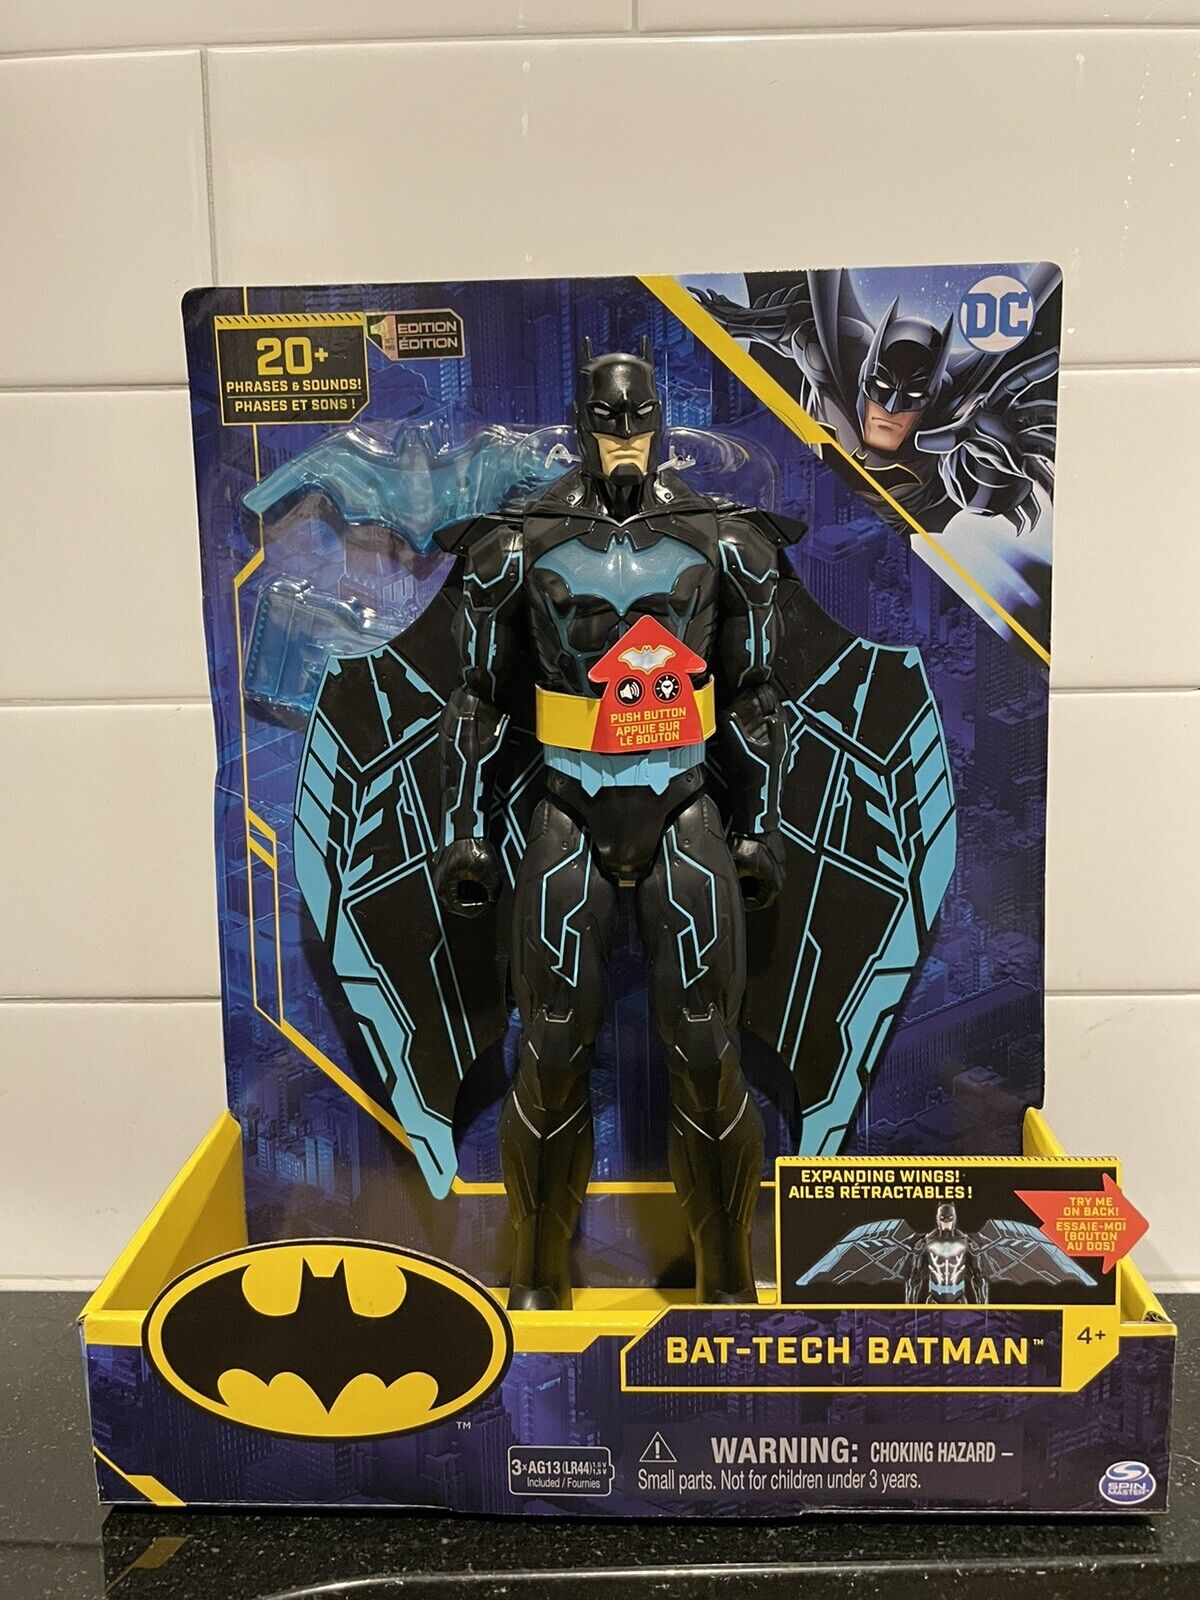 Details about   DC Talking Bat-Tech Batman 12” Expanding Wings 20 Phrases & Sounds Lights NEW!